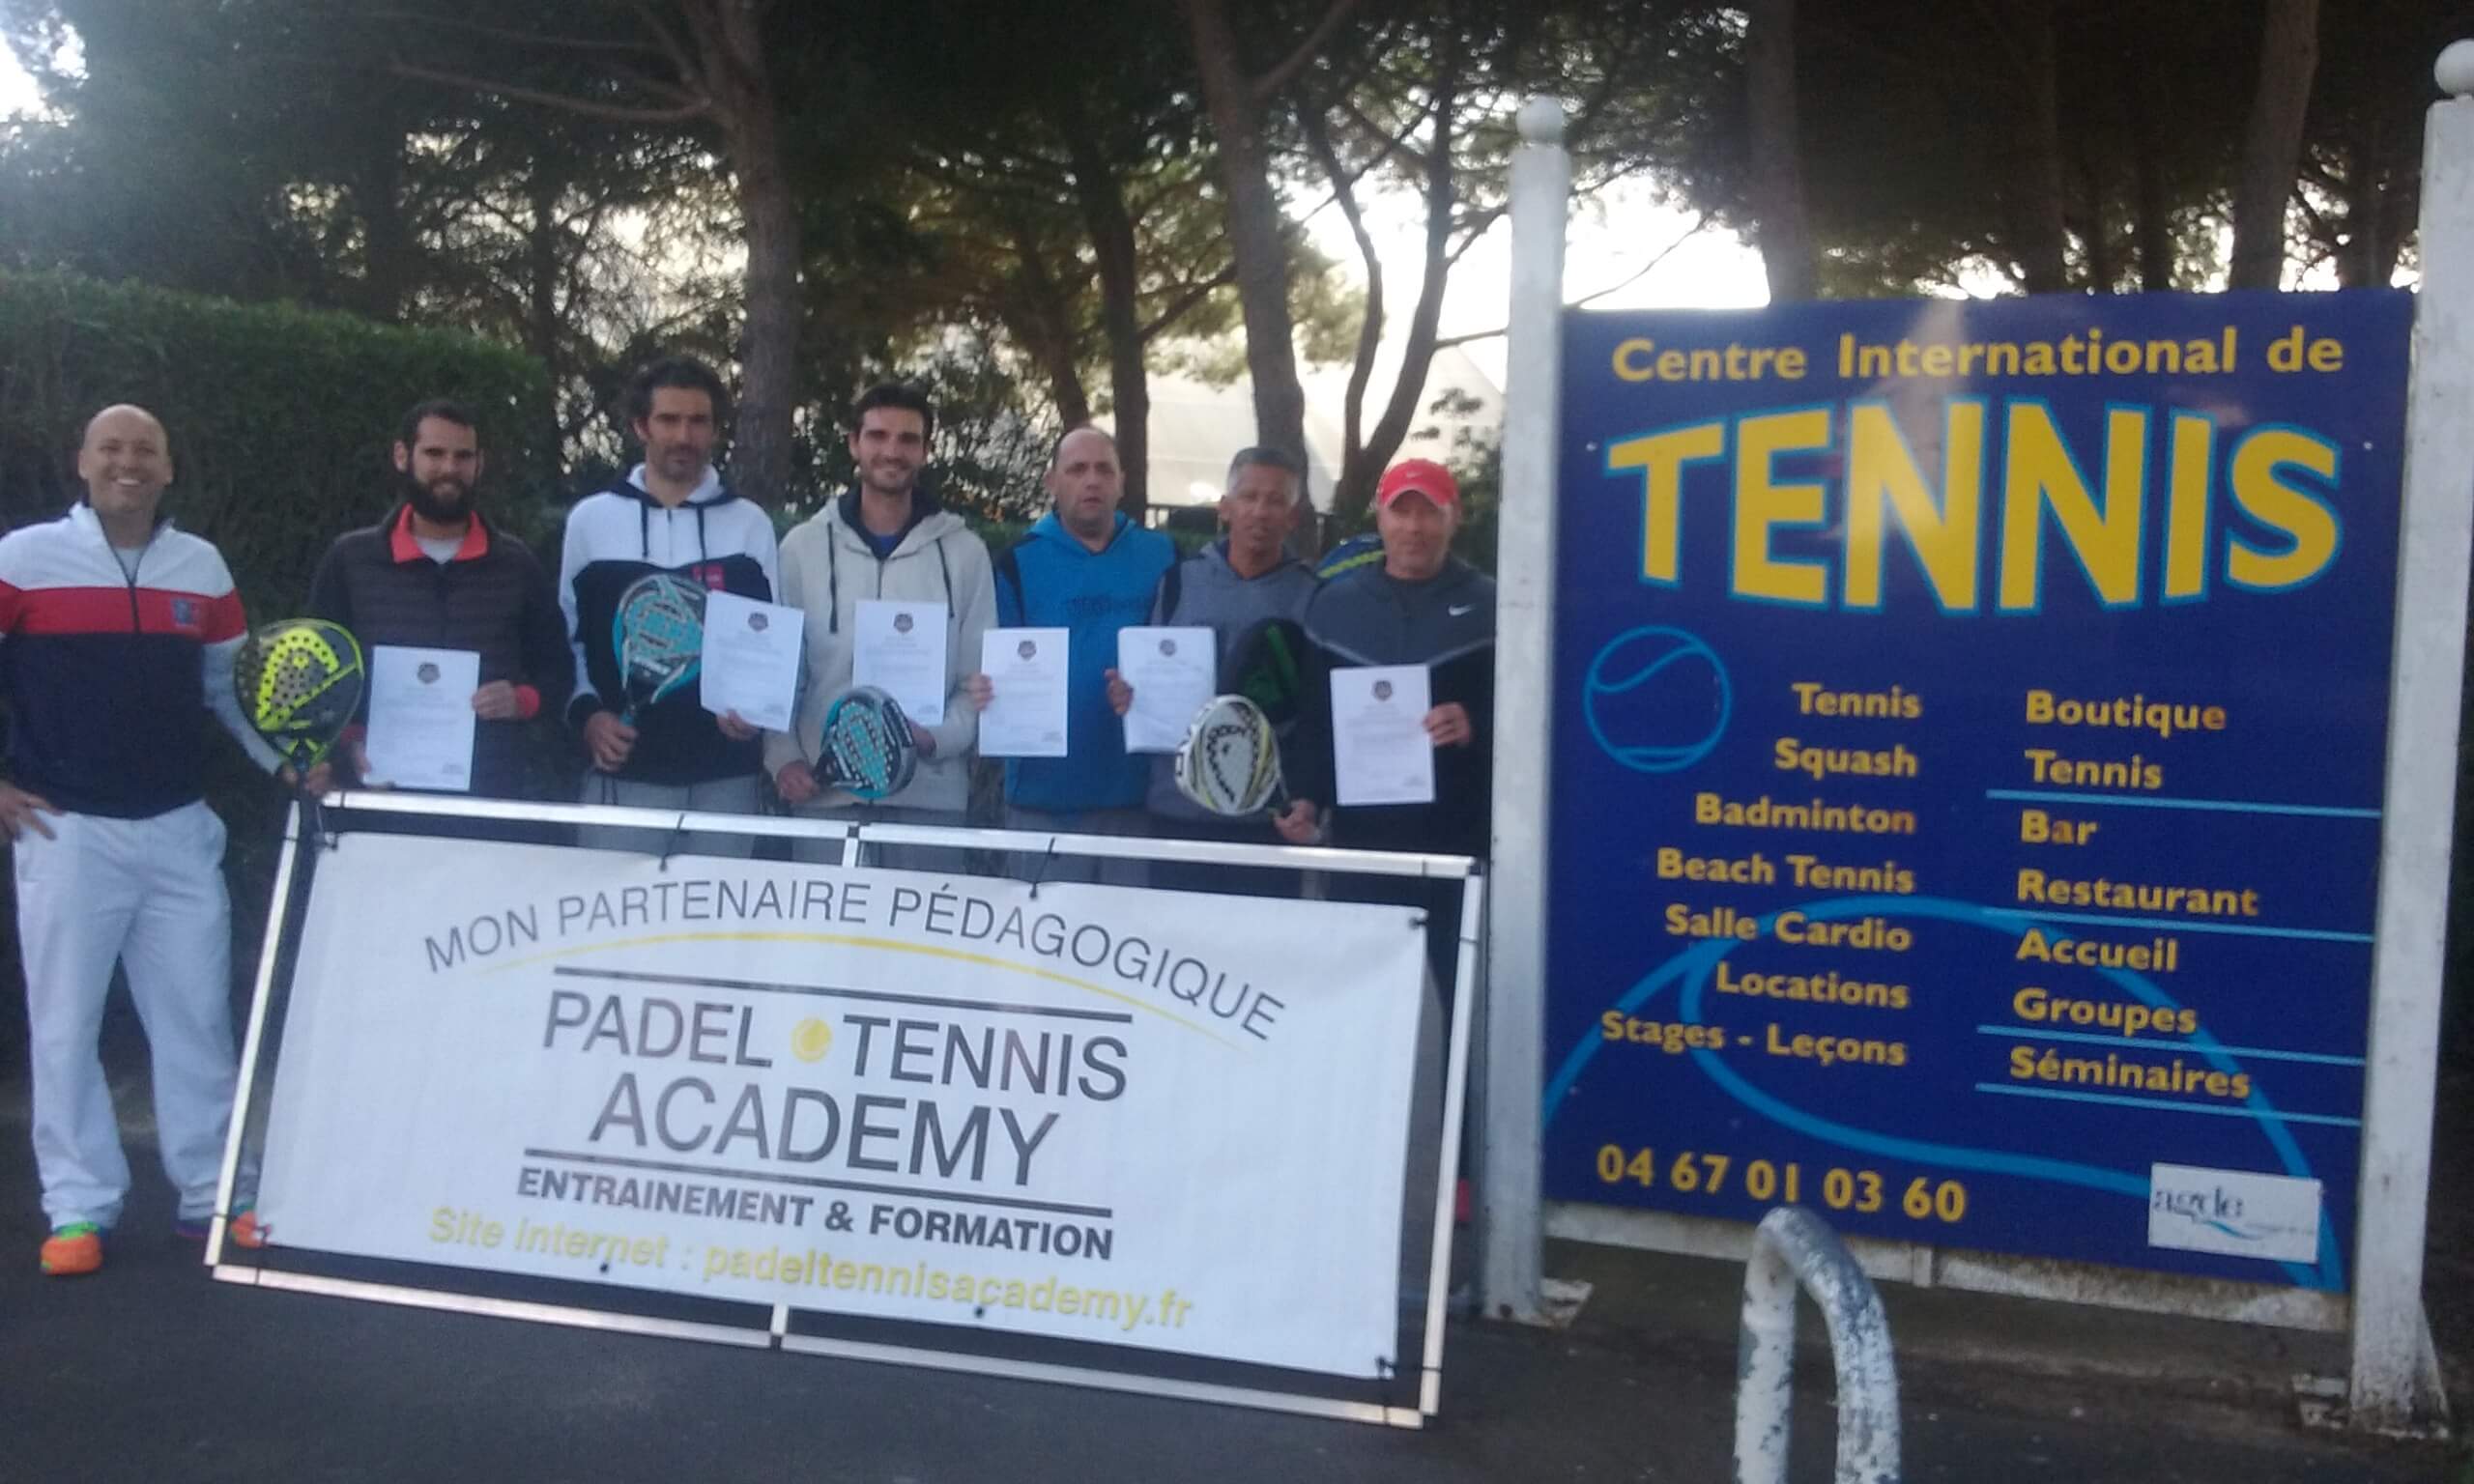 El tenis CI / Padel de Cap d'Agde se estructura